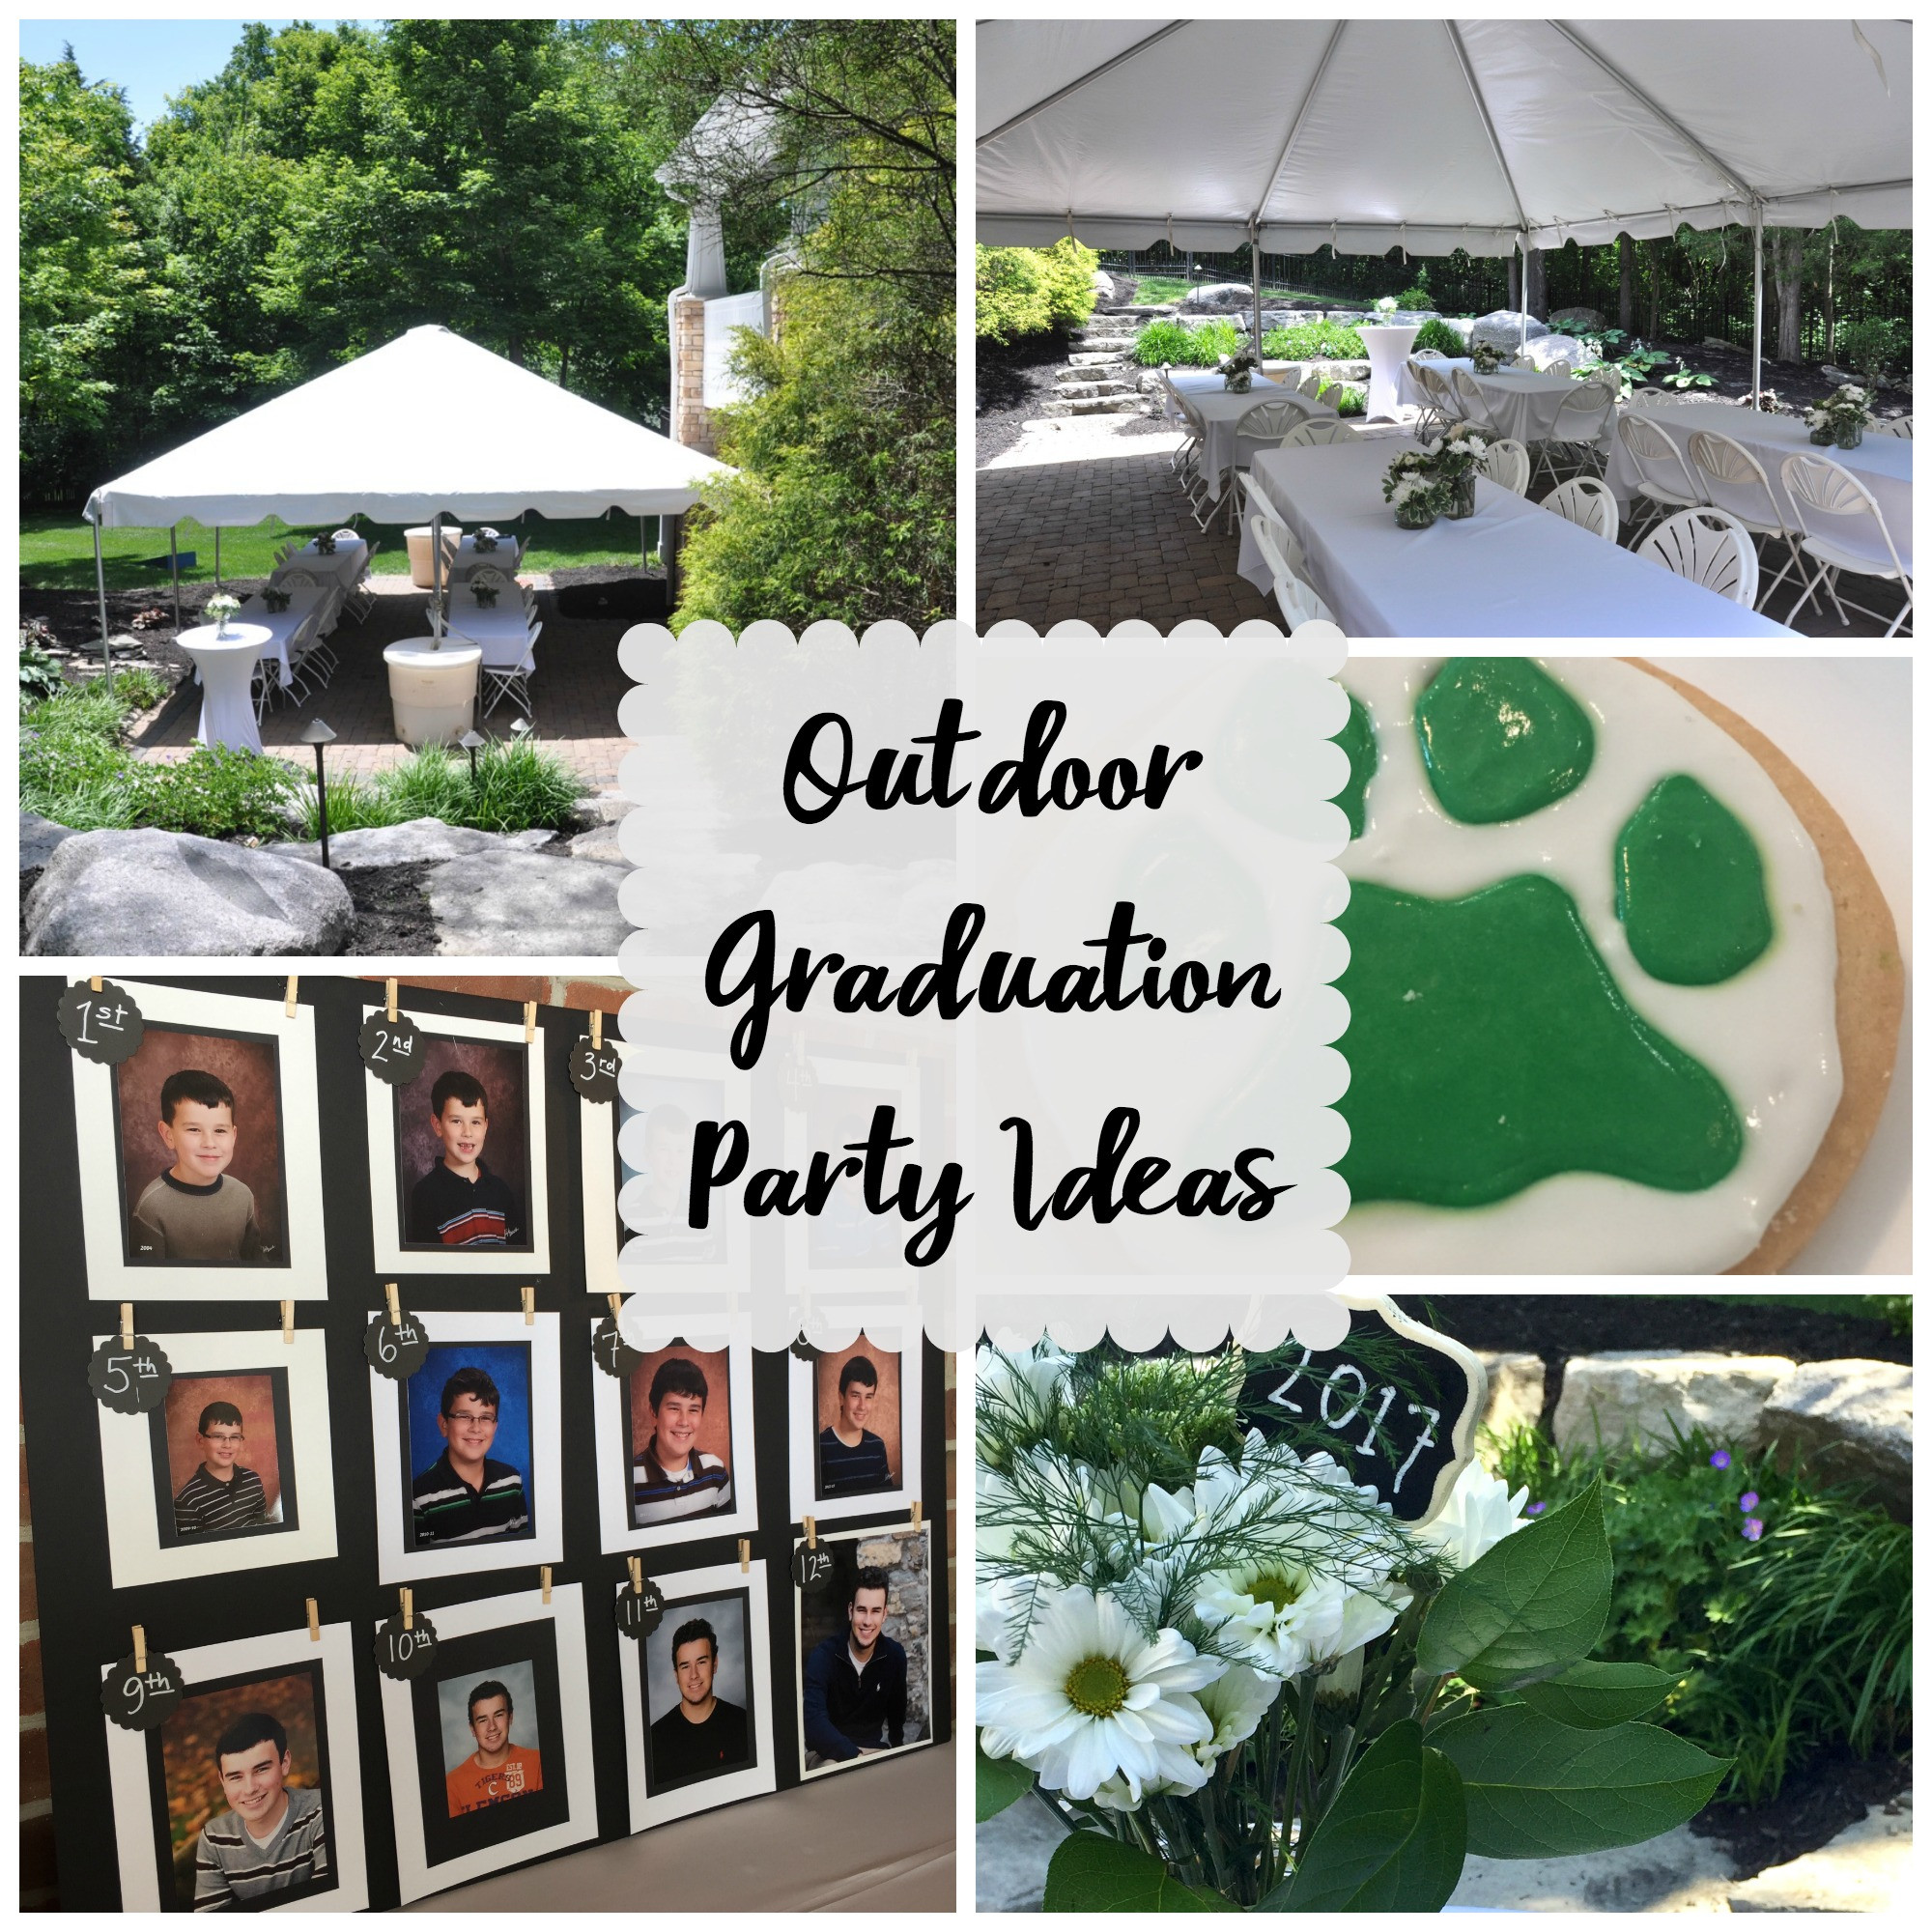 Outdoor High School Graduation Party Ideas
 Outdoor Graduation Party Evolution of Style